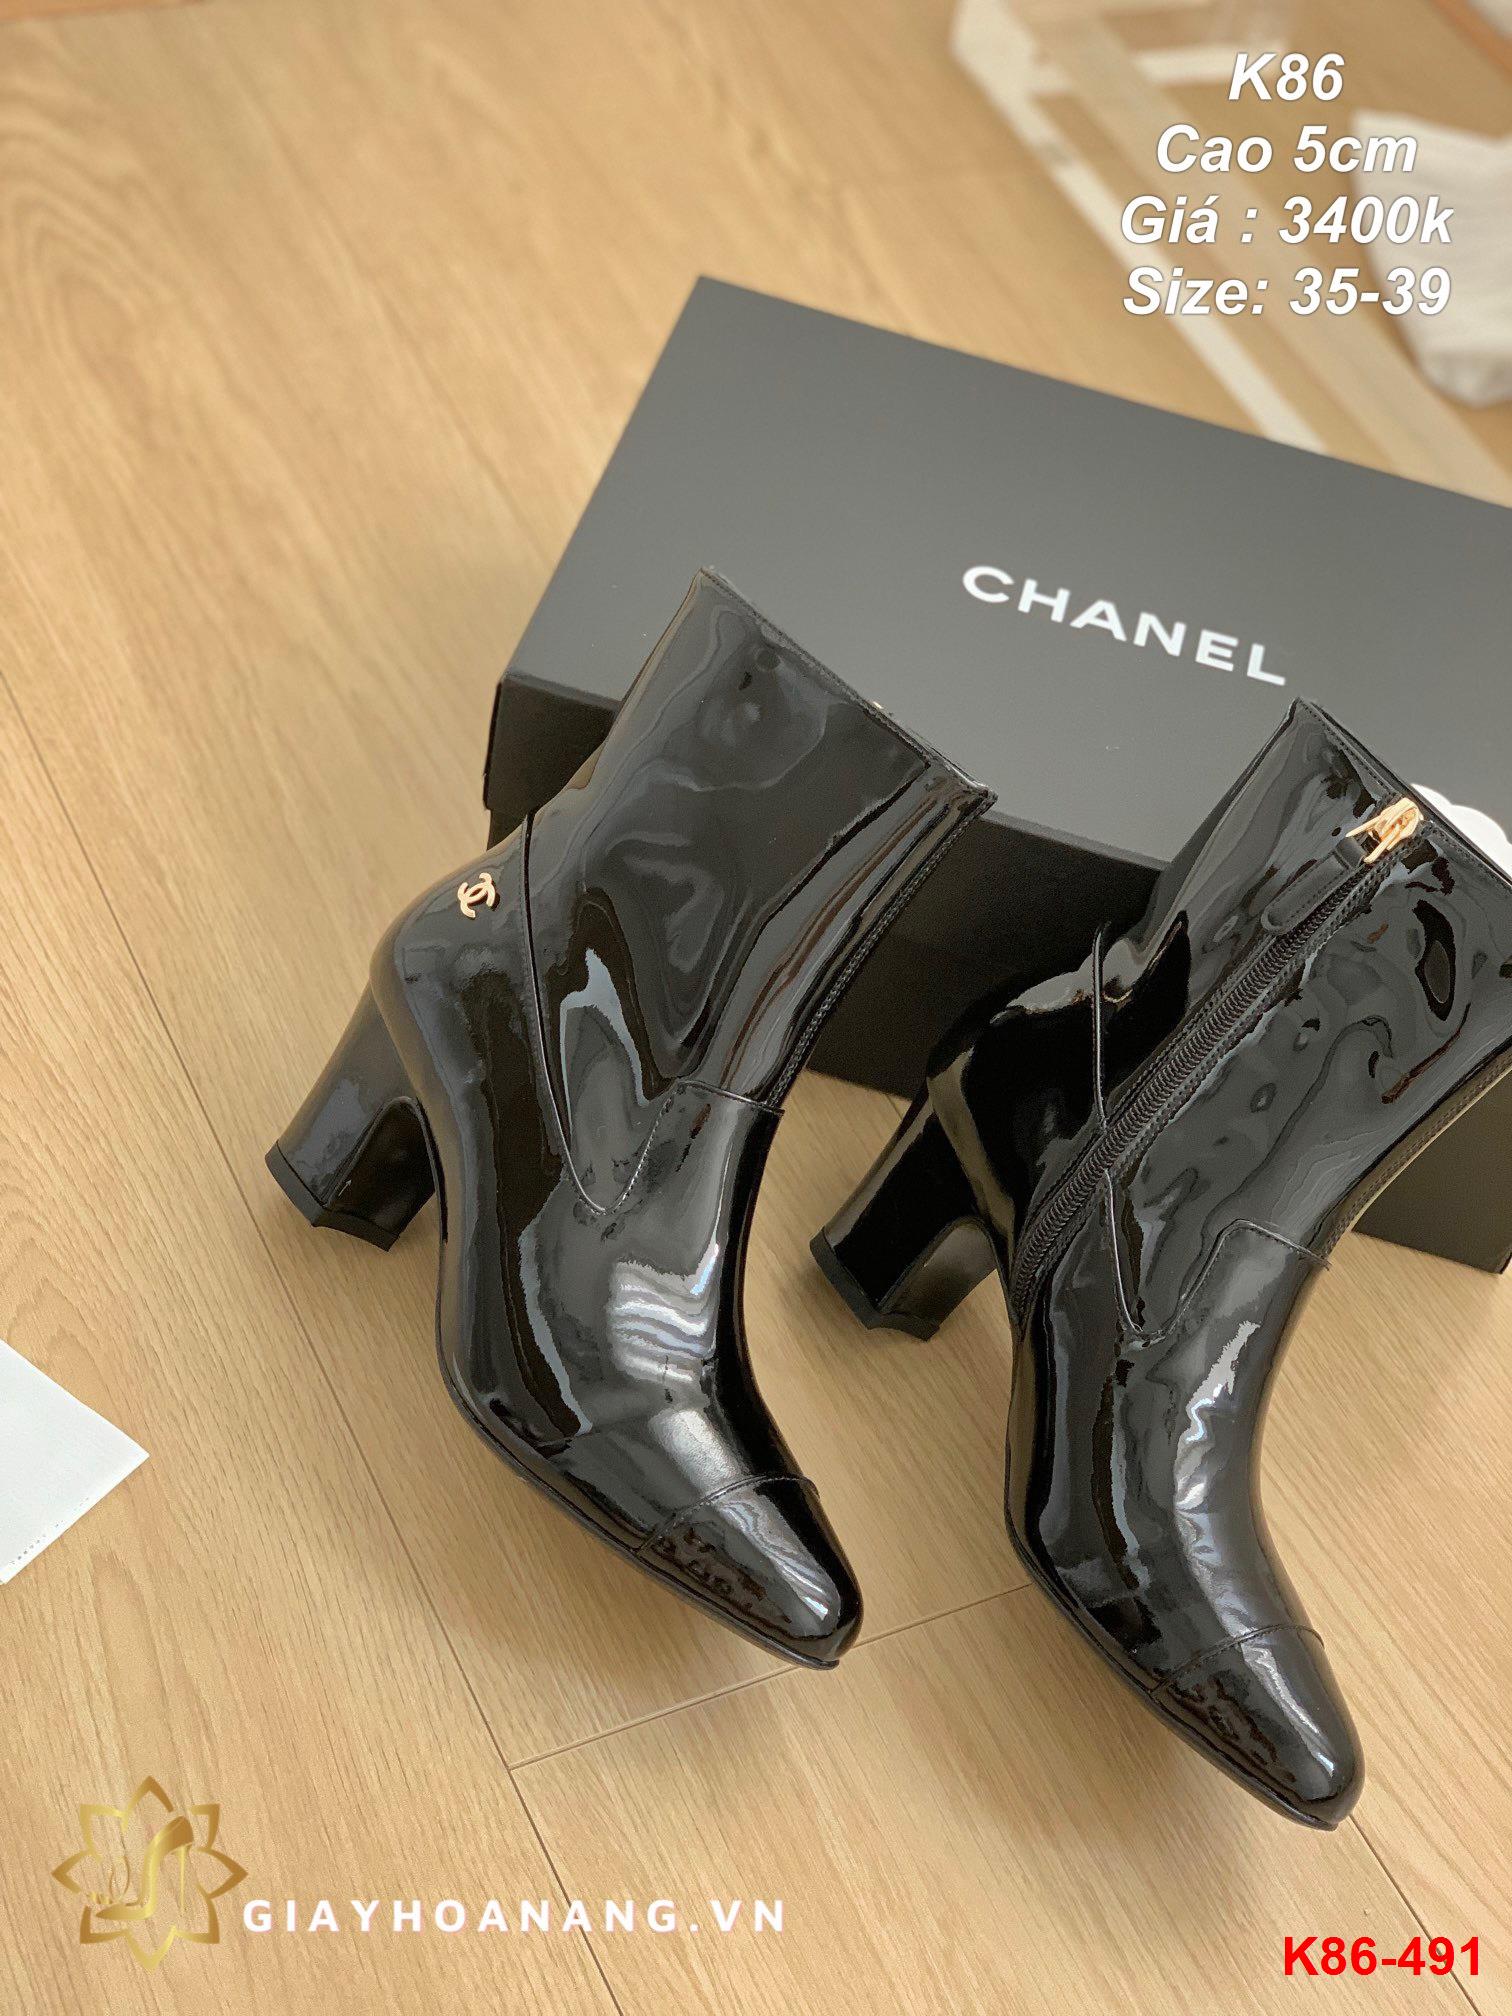 K86-491 Chanel bốt cao 5cm siêu cấp